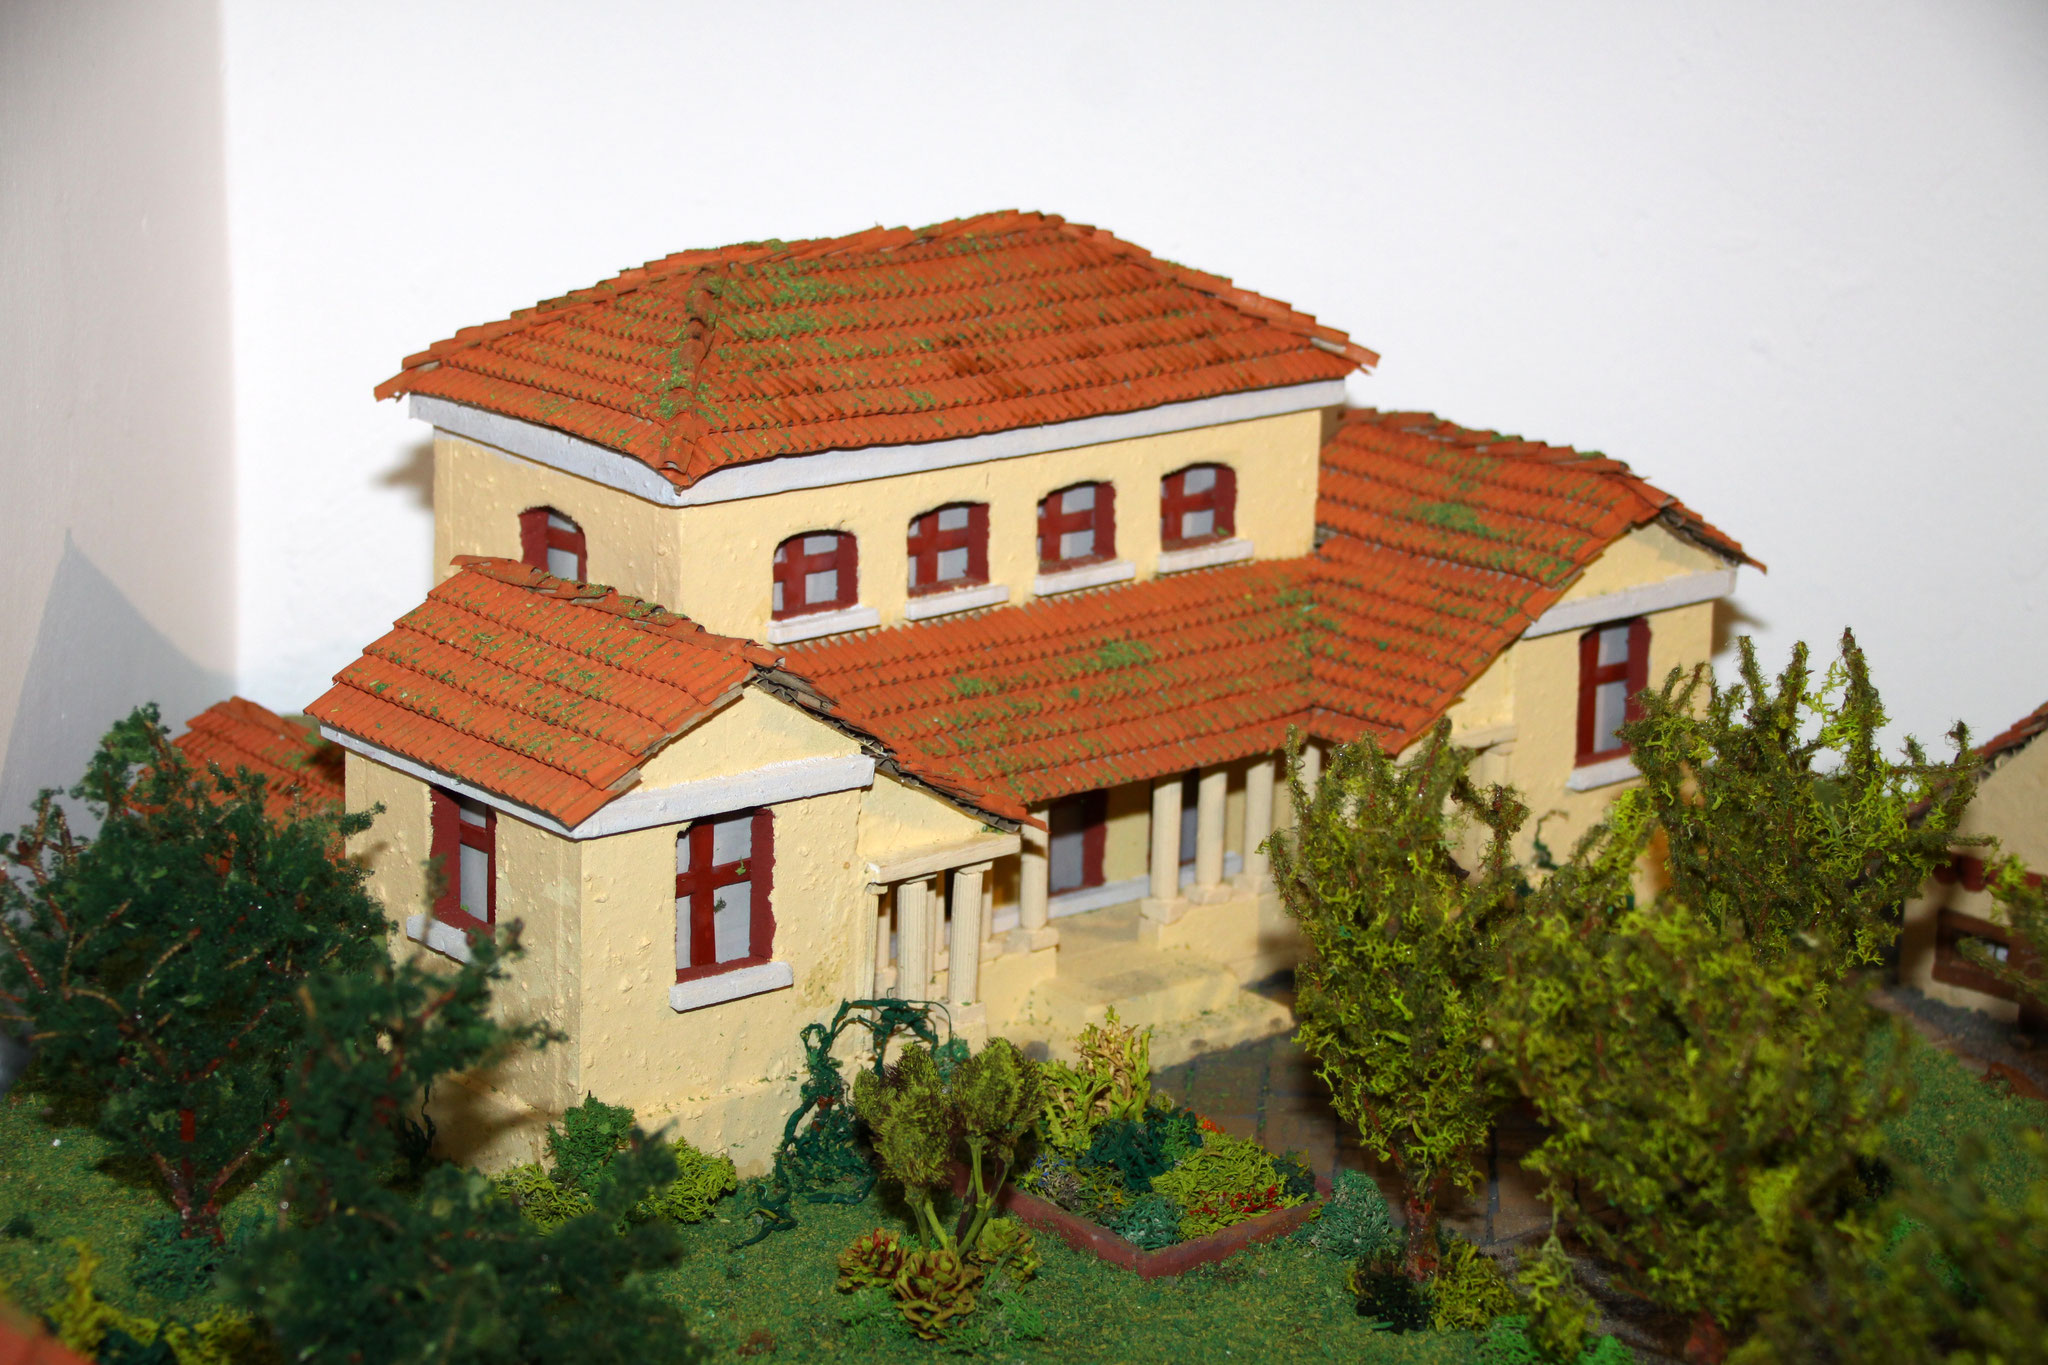 Rund um Bergheim gab es rund 50 römische Landgüter. Hier präsentieren wir das Model einer villa rustica.